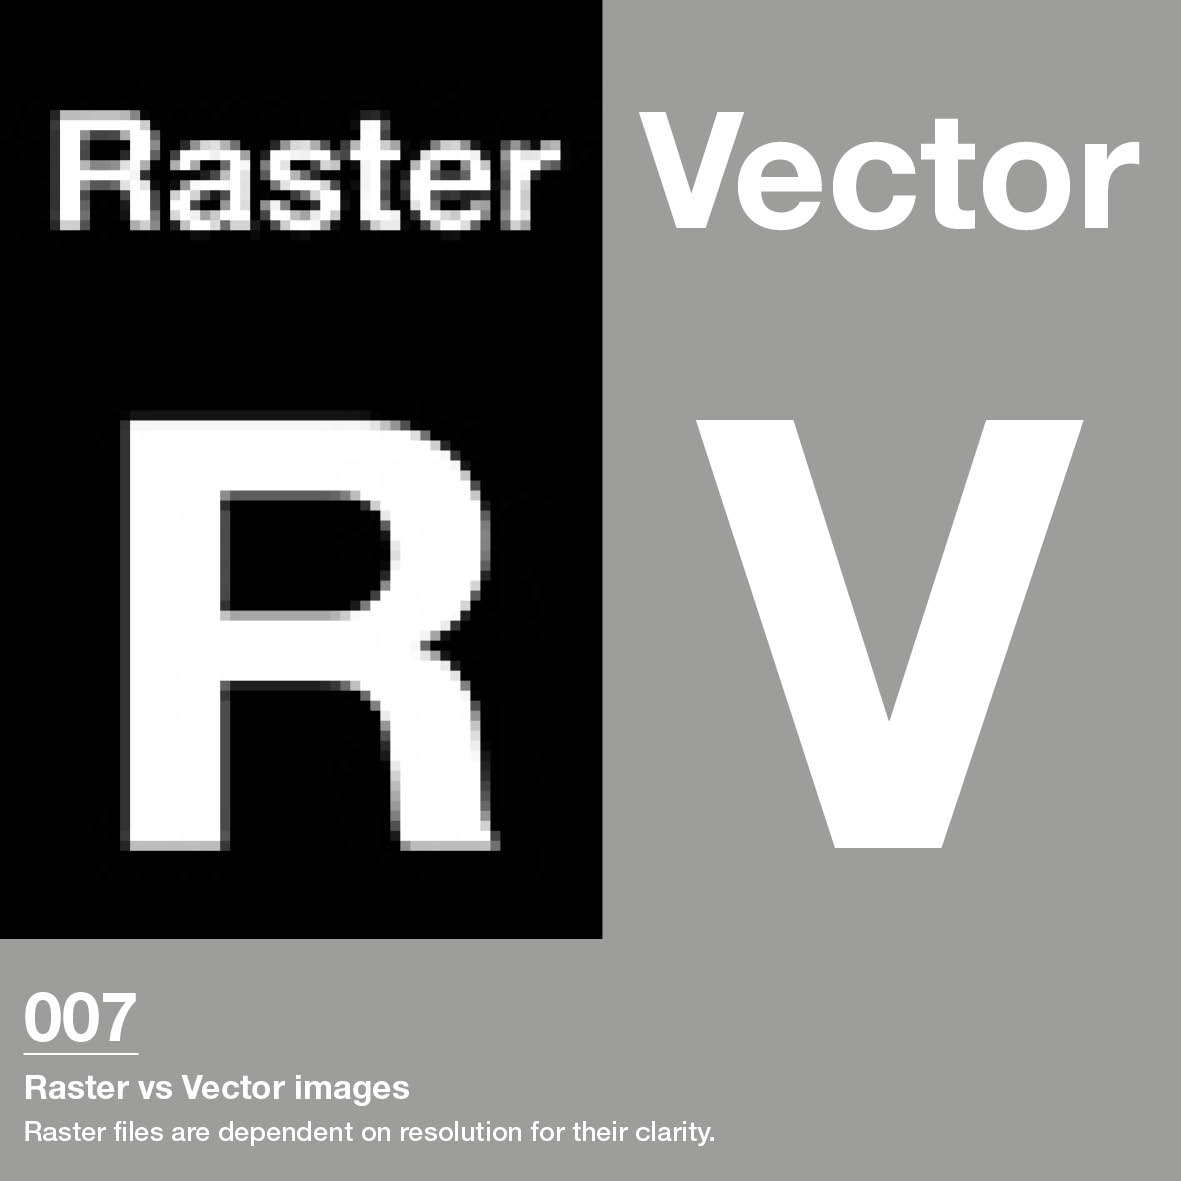 Raster versus Vector format